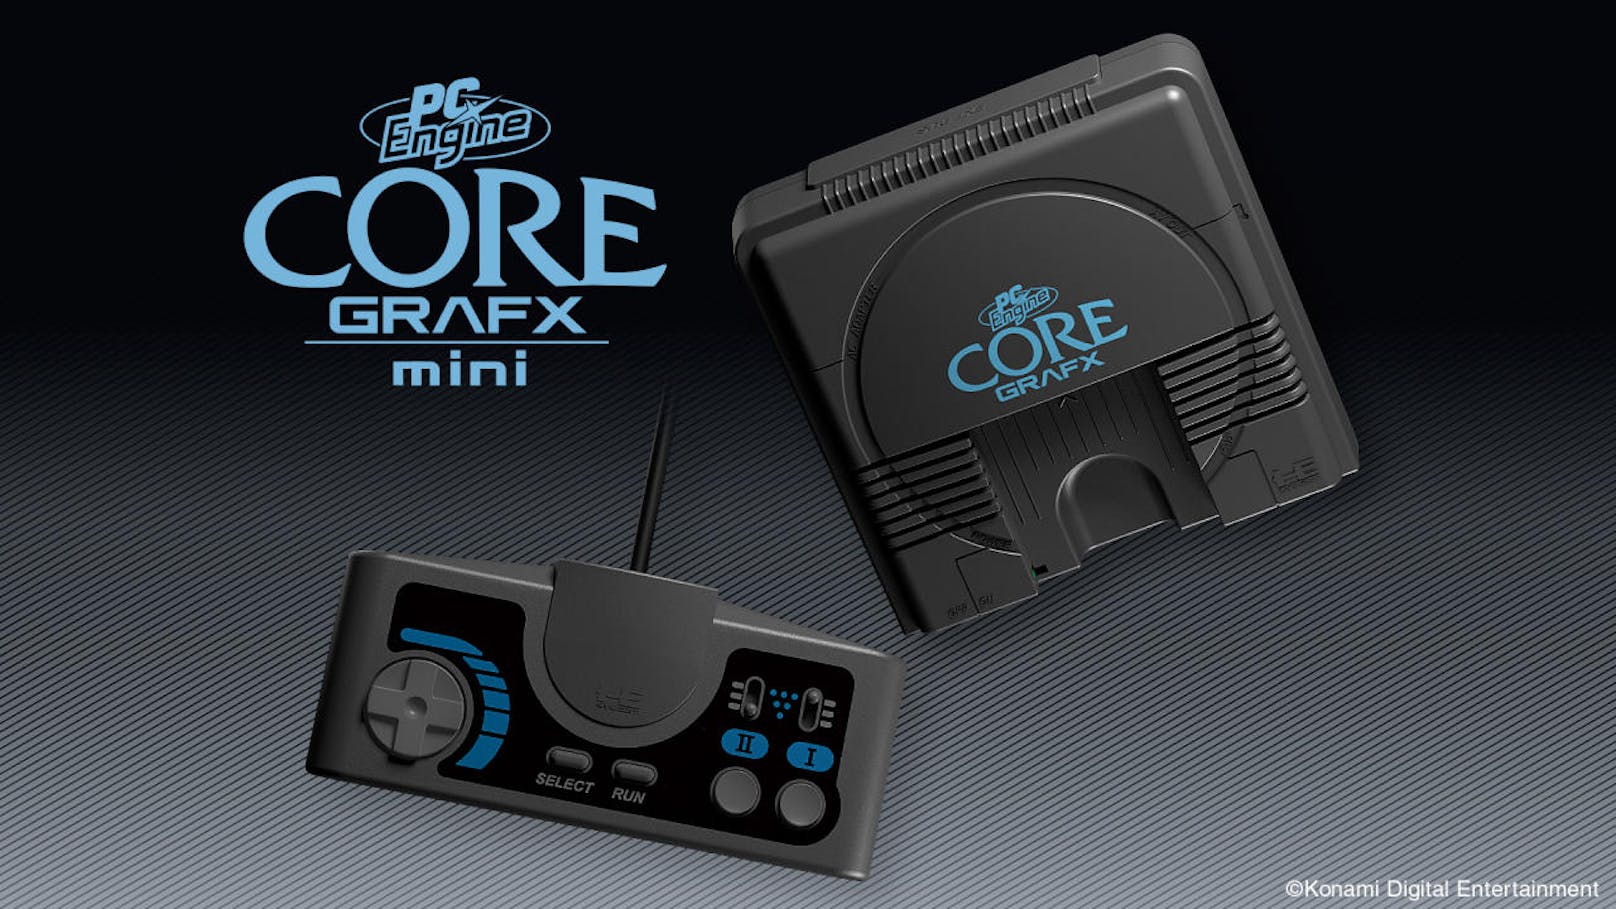 <b>13. Juni 2019:</b> Konami hat die PC Engine Core Grafx mini angekündigt, eine Miniatur-Version der klassischen Konsole aus den 80er-Jahren. Die Mini-Konsole wird eine Reihe von beliebten Retro-Spielen enthalten, die bereits zum Teil auf der Electronic Entertainment Expo (E3) 2019 in Los Angeles vorgestellt wurden. Die im Vergleich zum Original noch kleinere Konsole passt in eine Handfläche, verfügt aber über einen normalgroßen Controller. Zu den angekündigten vorinstallierten Titeln der PC Engine Core Grafx mini gehören R-Type, New Adventure Island, Ninja Spirit, Ys Book I & II, Dungeon Explorer und Alien Crush. Die PC Engine Core Grafx mini wird in ausgewählten europäischen Ländern erscheinen. Wann und wie teuer, ist noch unklar.